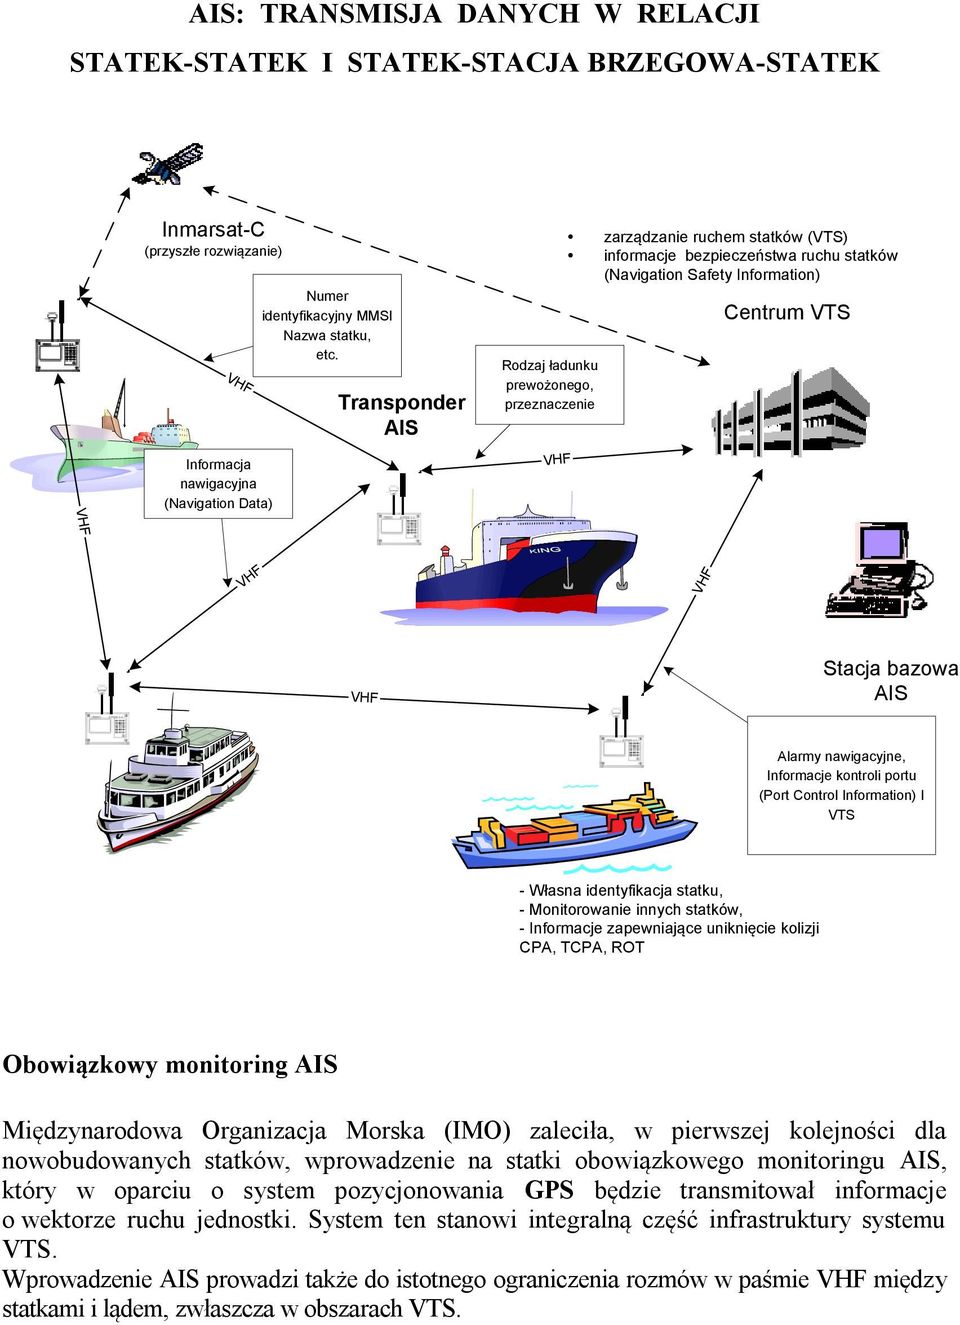 Stacja bazowa AIS Alarmy nawigacyjne, Informacje kontroli portu (Port Control Information) I VTS - Własna identyfikacja statku, - Monitorowanie innych statków, - Informacje zapewniające uniknięcie